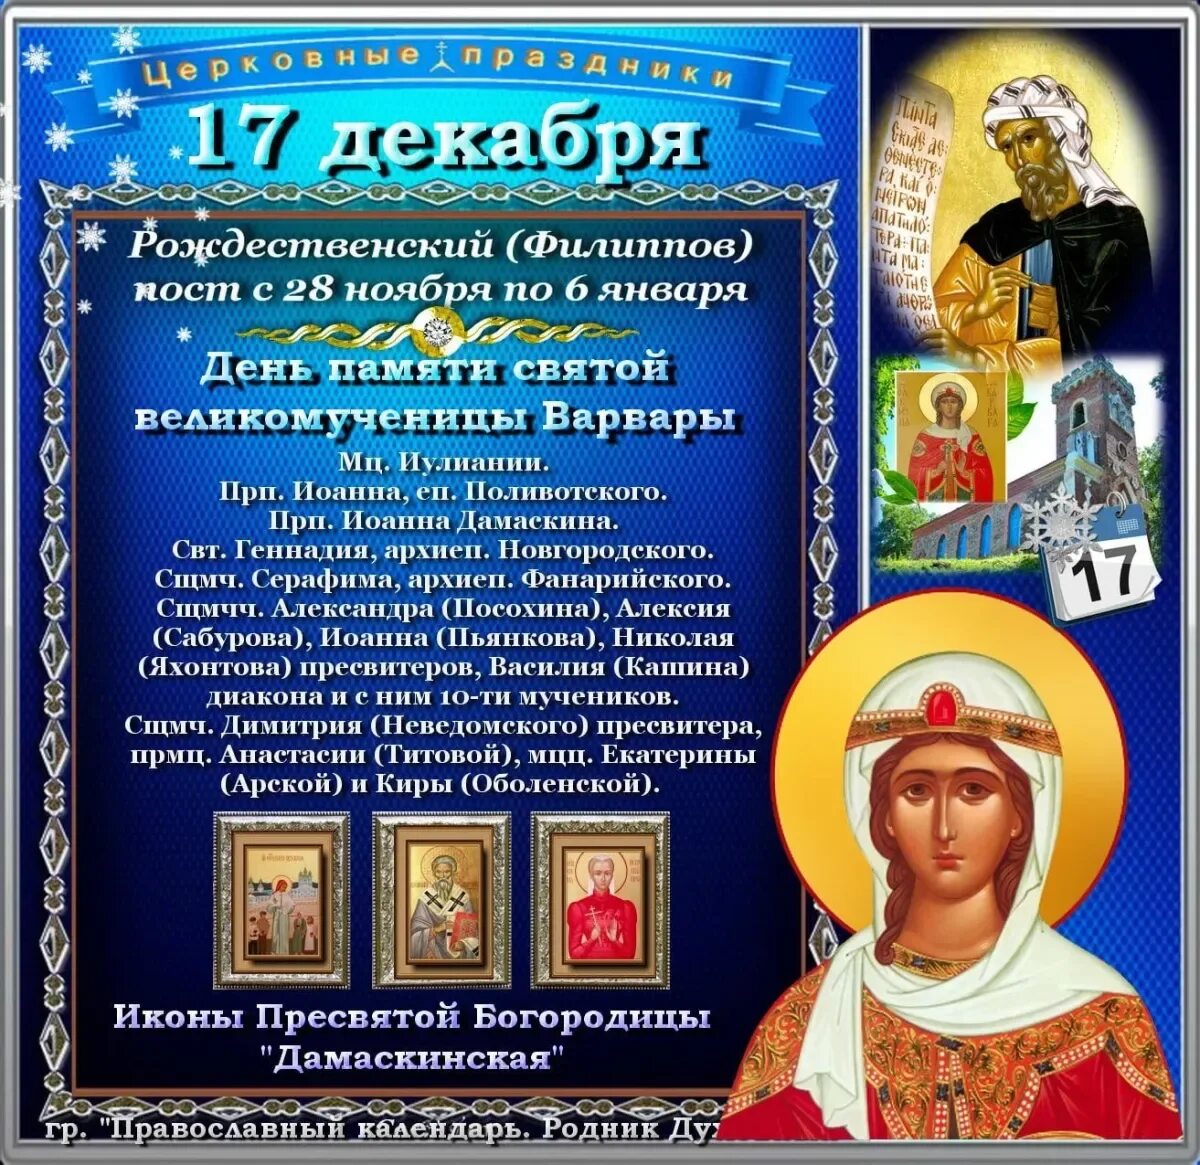 17 Декабря праздник. 17 Декабря православный. Святые дня 17 декабря. 17 Декабря православный календарь.